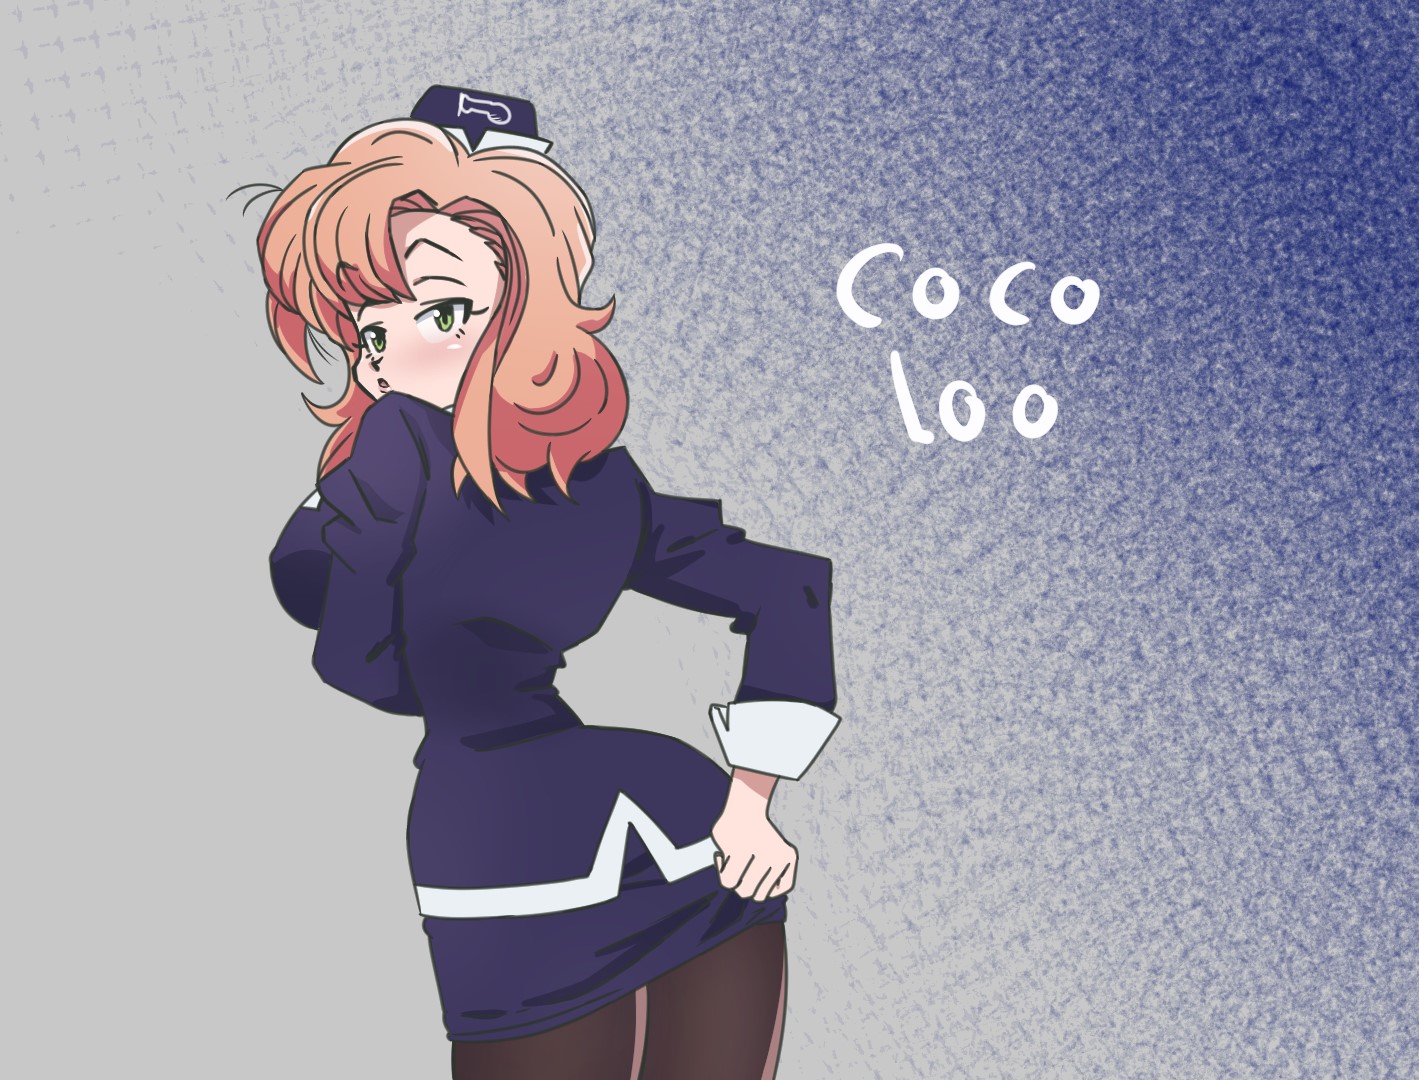 Coco loo